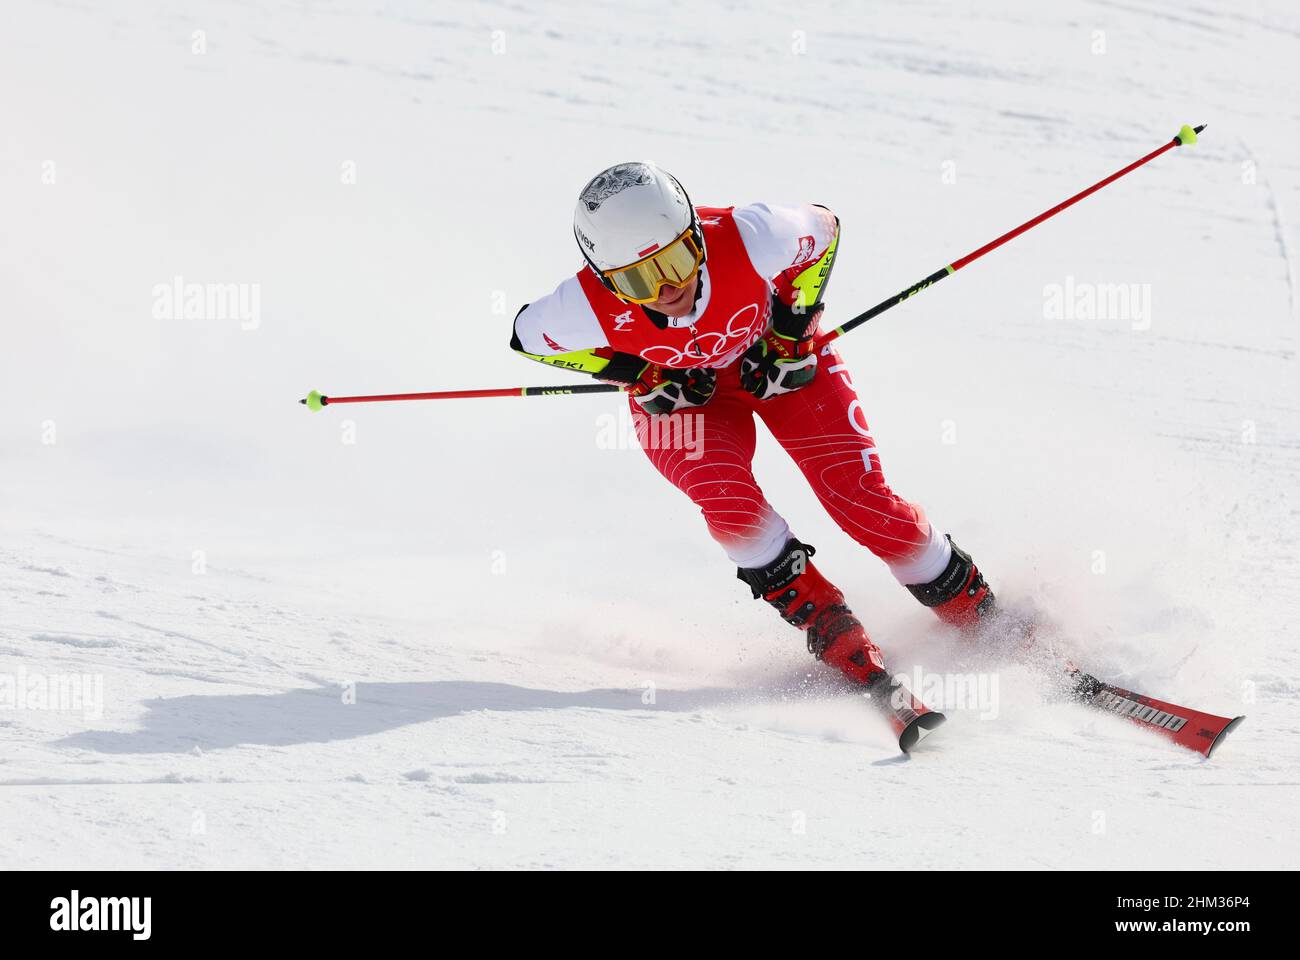 2022 Jeux Olympiques de Beijing - ski alpin - course de slalom géant pour  femmes 2 - Centre national de ski alpin, quartier de Yanqing, Beijing,  Chine - 7 février 2022.Maryna Gasienica-Daniel